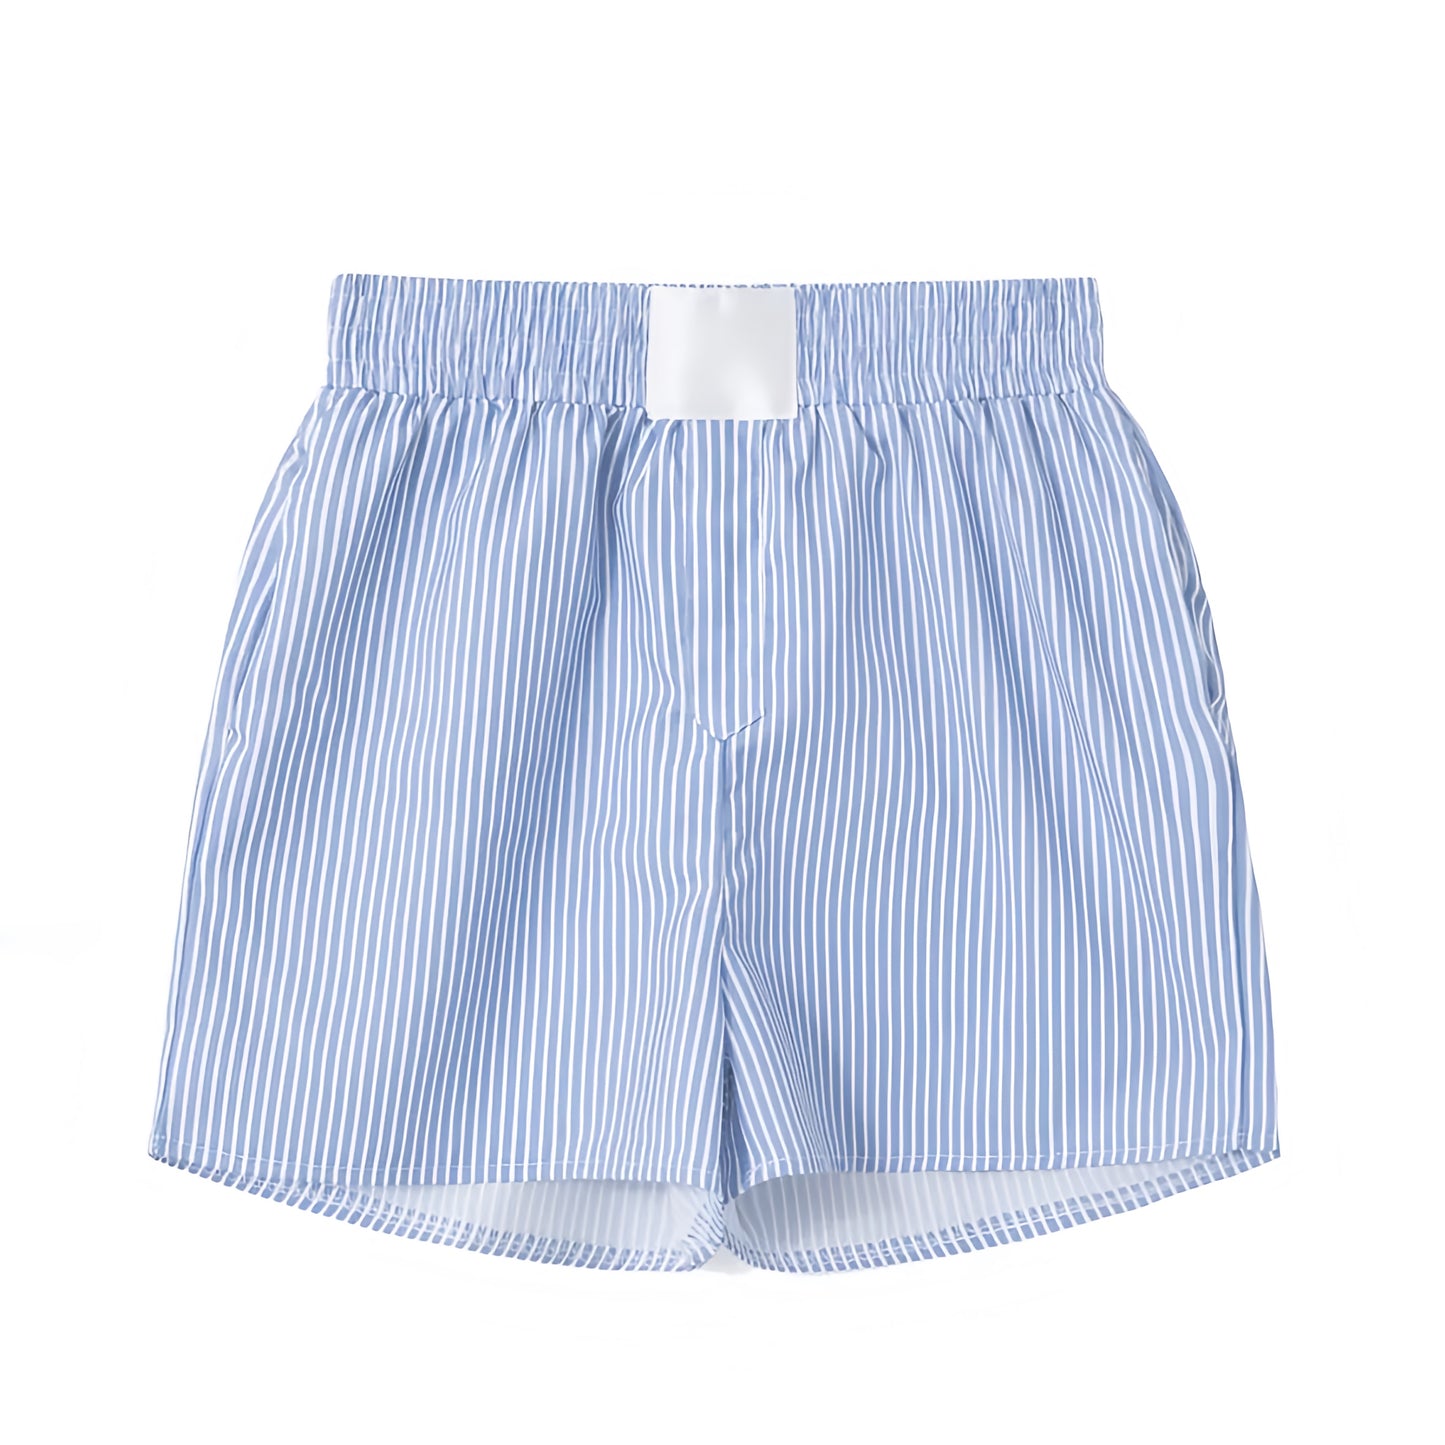 Light Blue & White Striped Seersucker Mid-Rise Linen Shorts